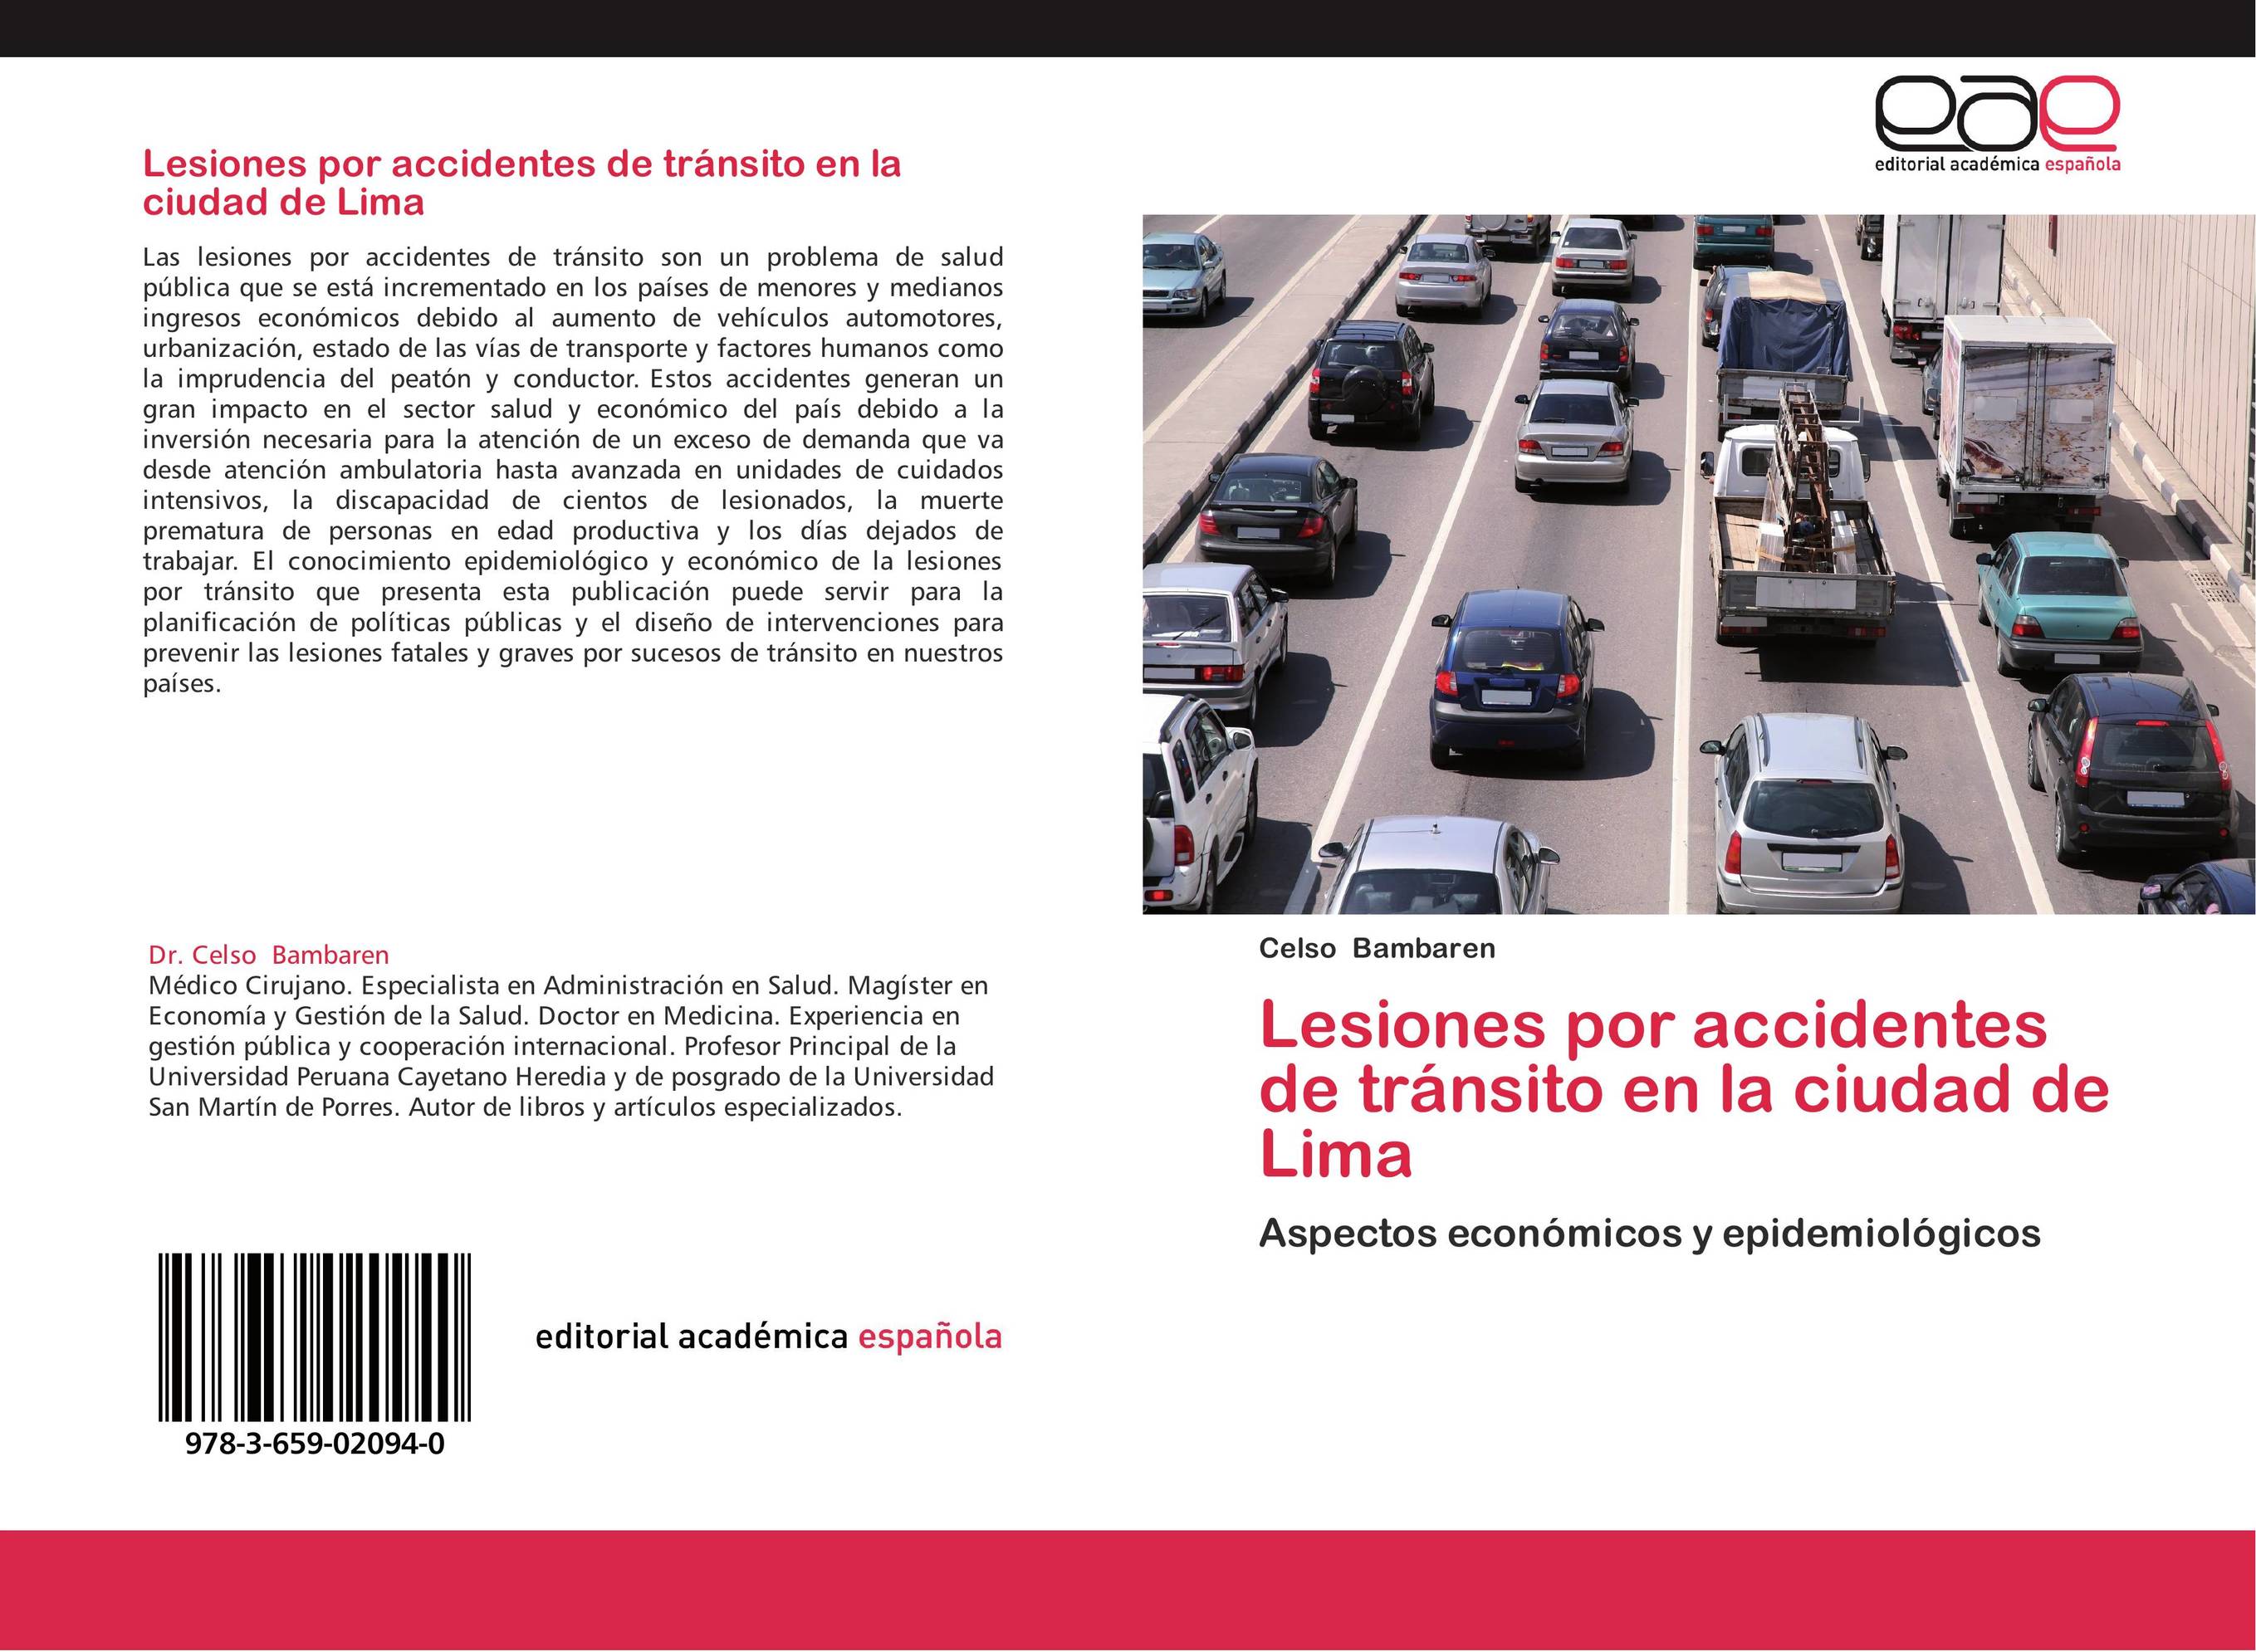 Lesiones por accidentes de tránsito en la ciudad de Lima